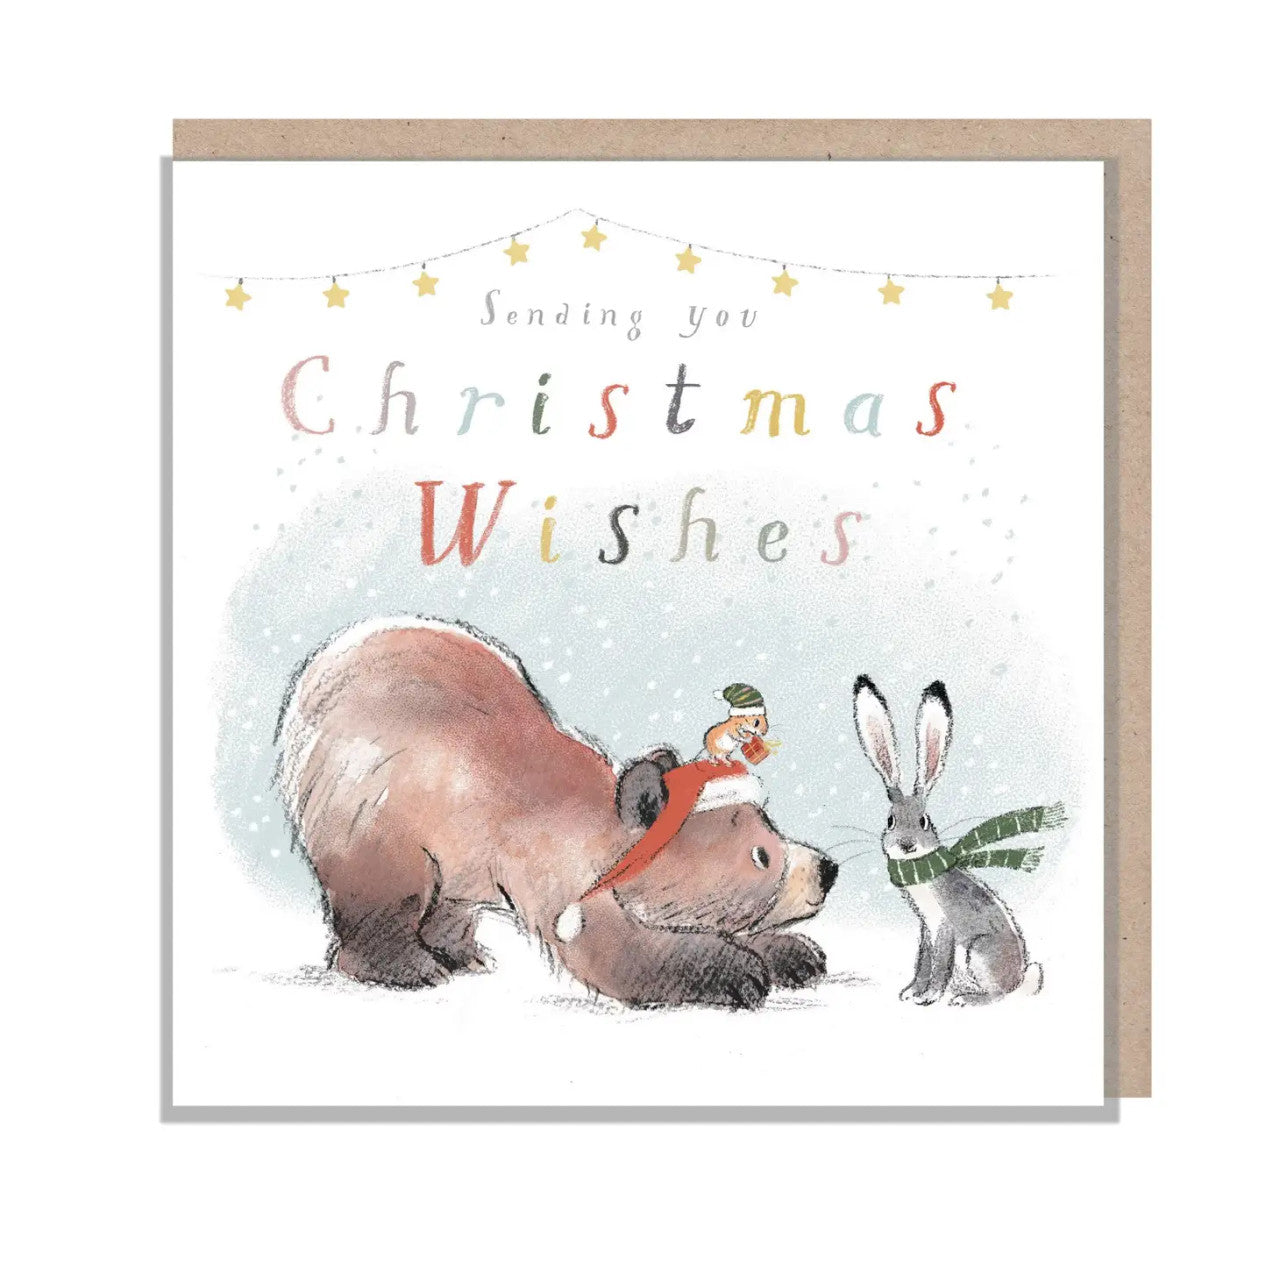 Sending You Christmas Wishes Christmas Card